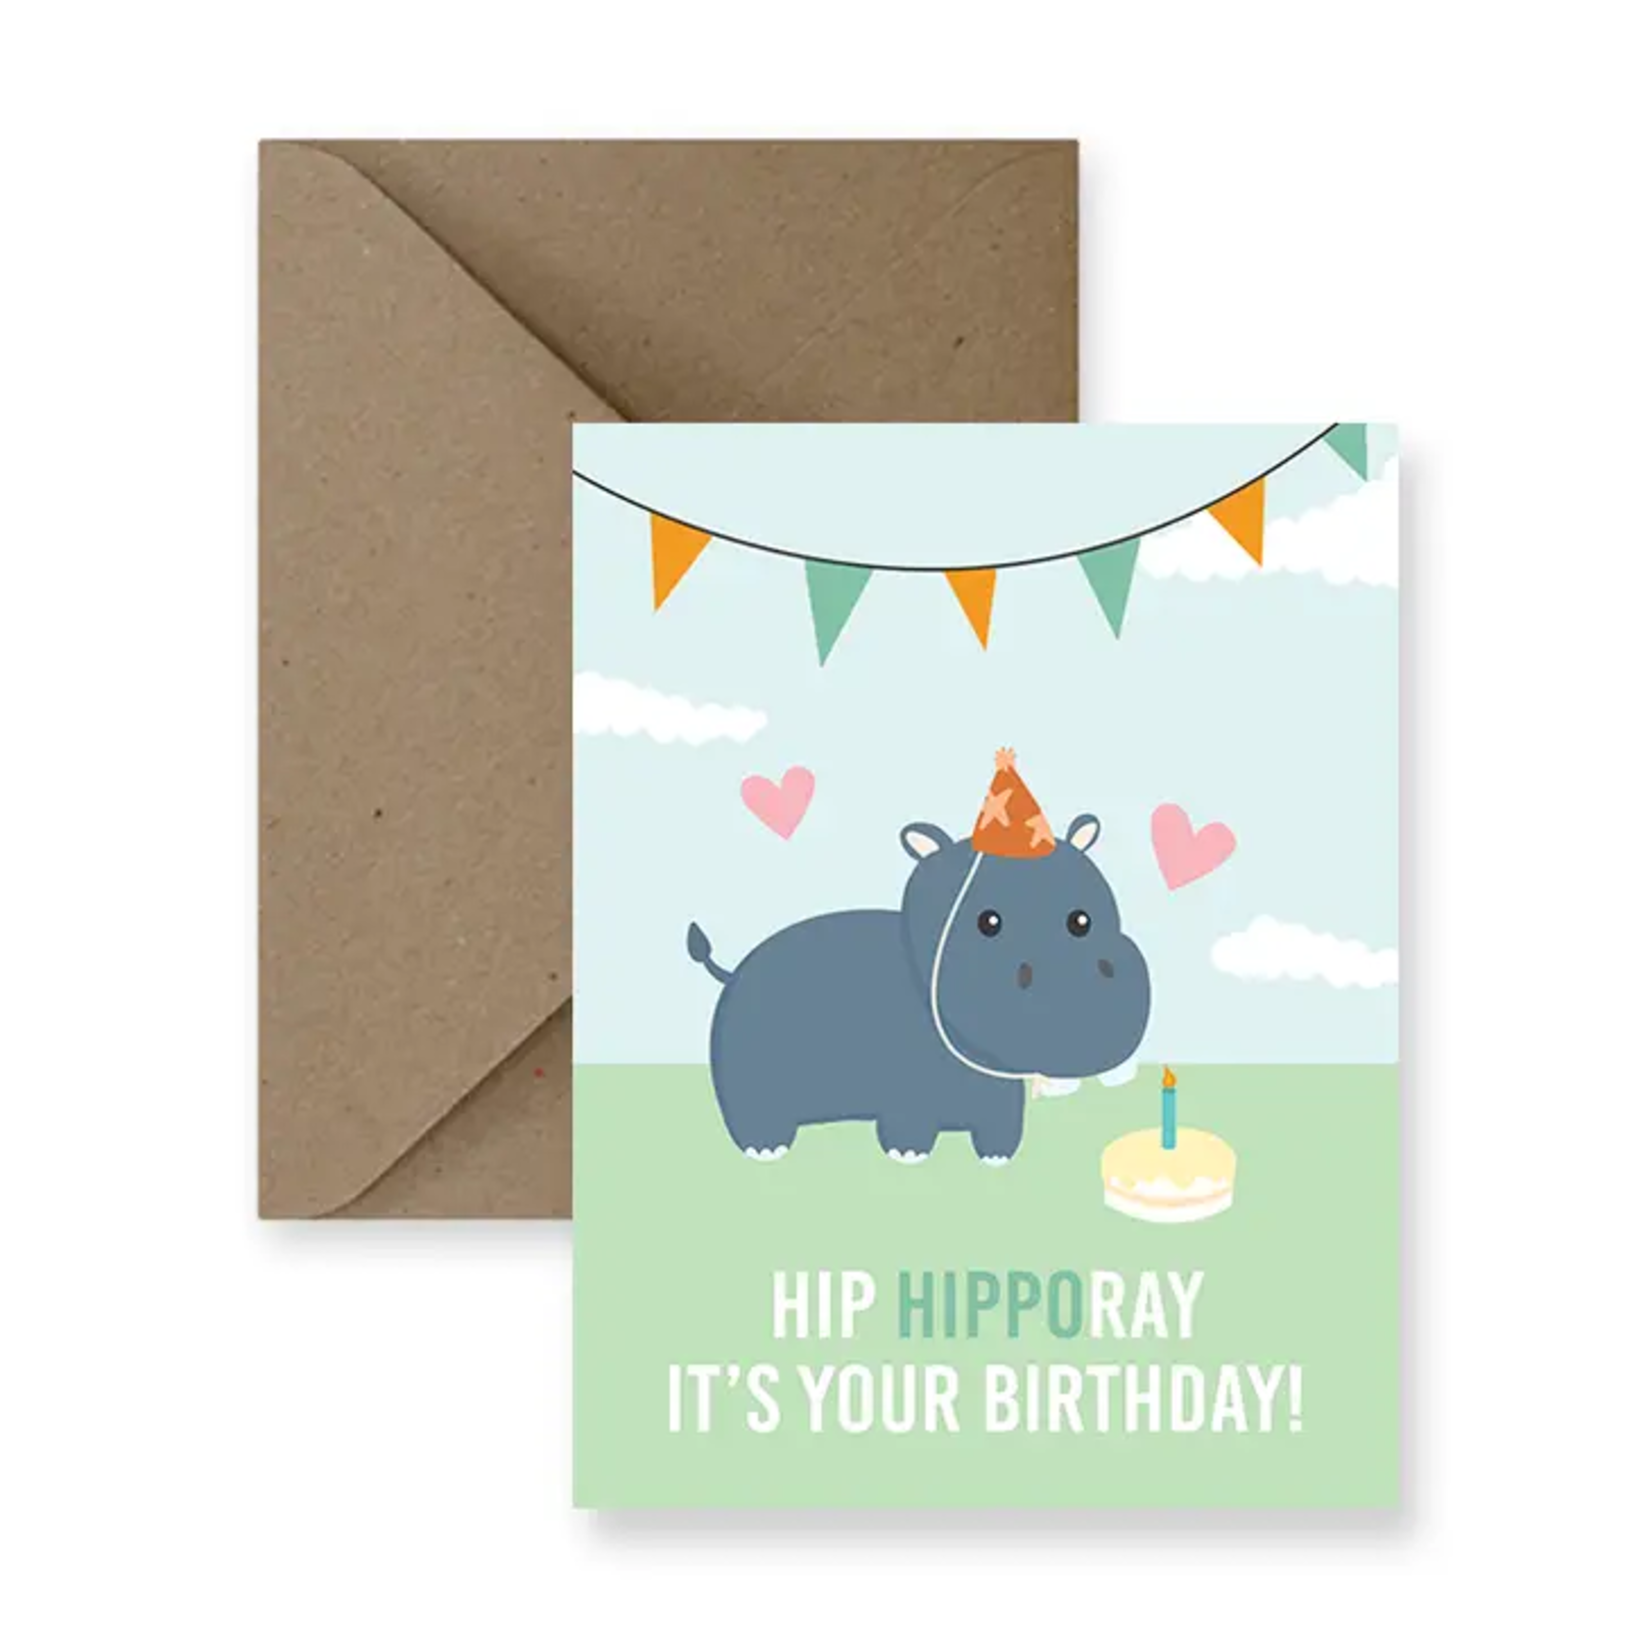 Hip Hipporay - Birthday Card